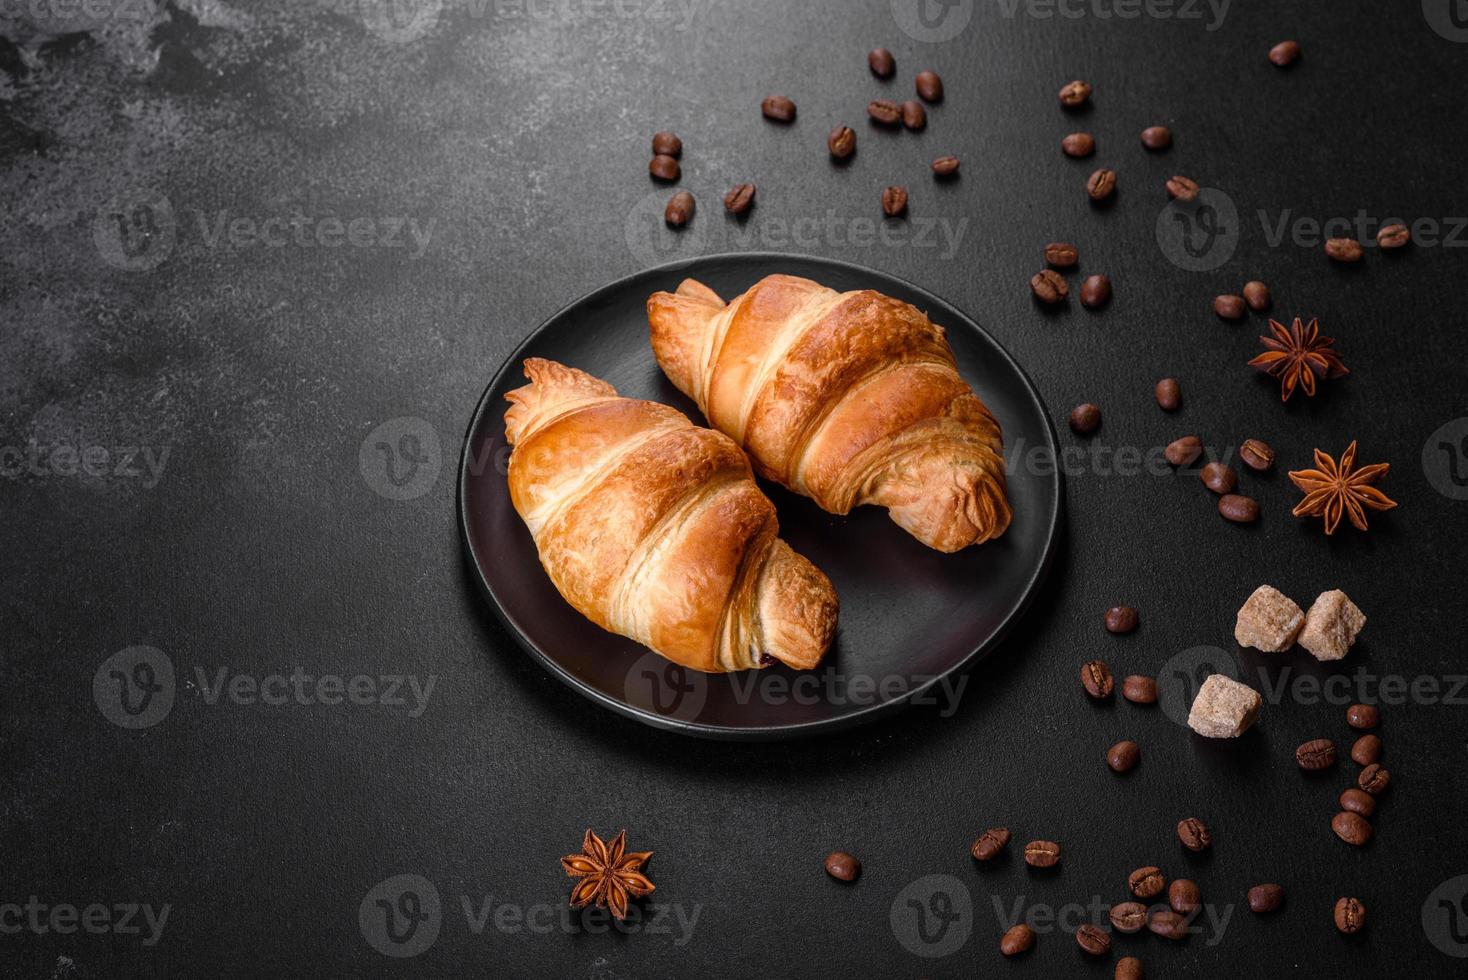 delicioso croissant francés fresco y crujiente con una taza de café aromático foto